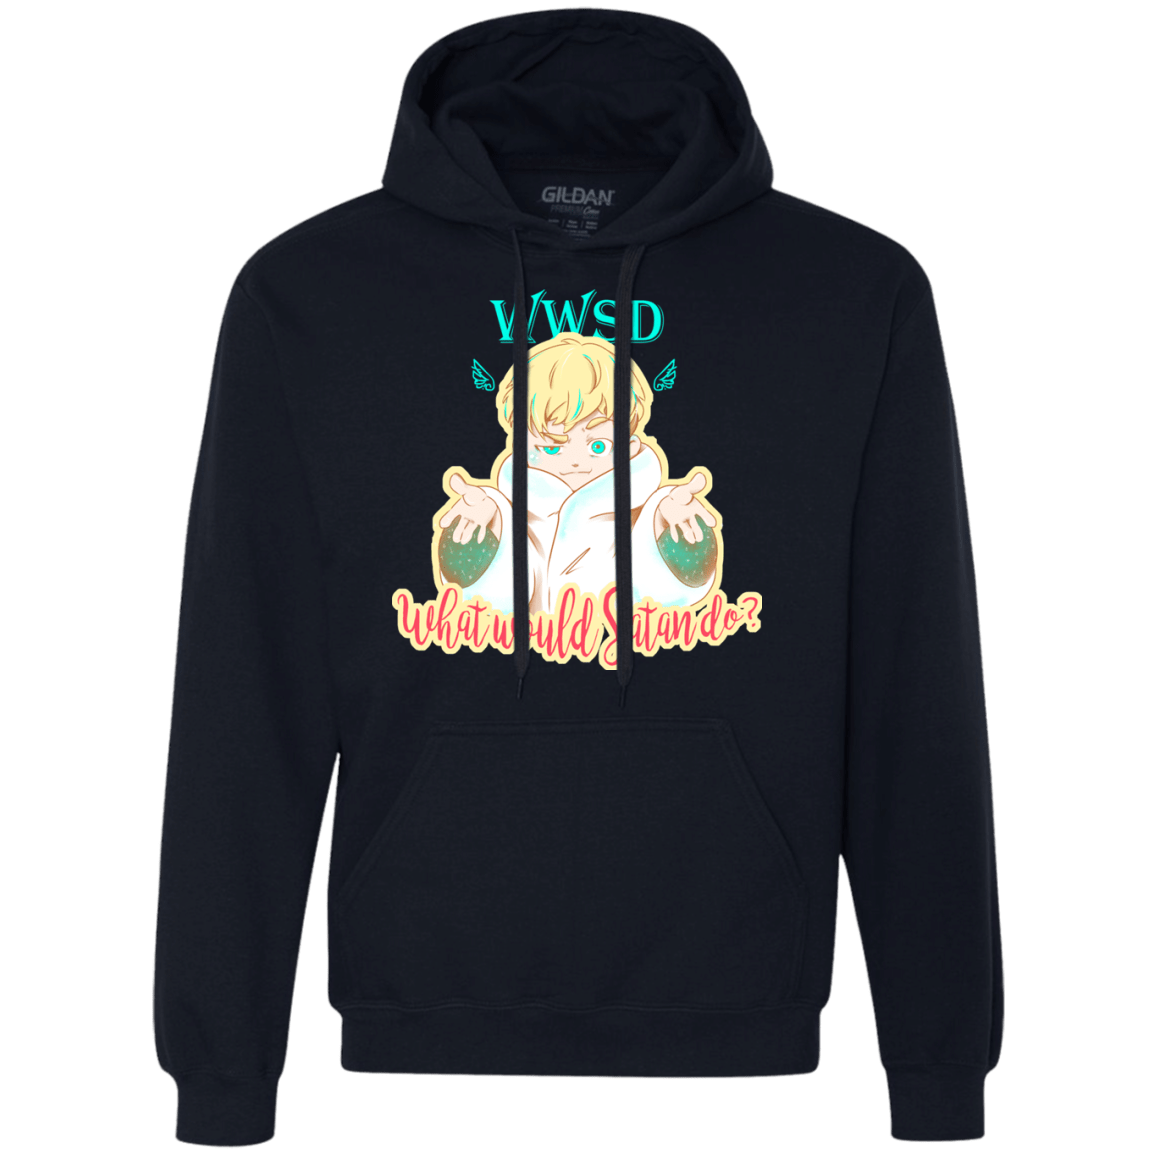 Sweatshirts Navy / S Ryo Premium Fleece Hoodie